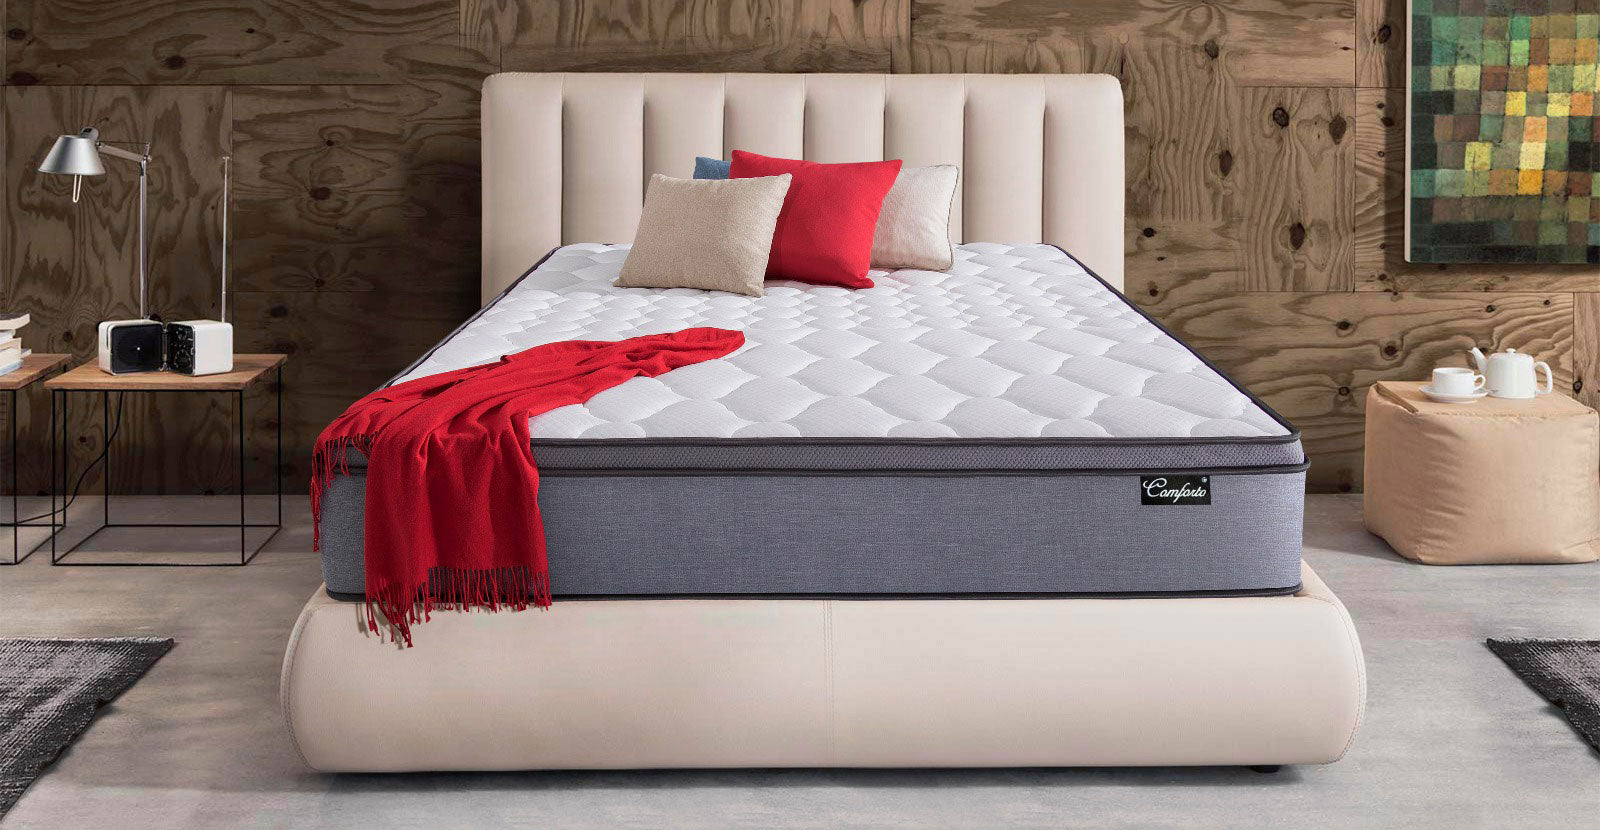 cheap bed mattress singapore